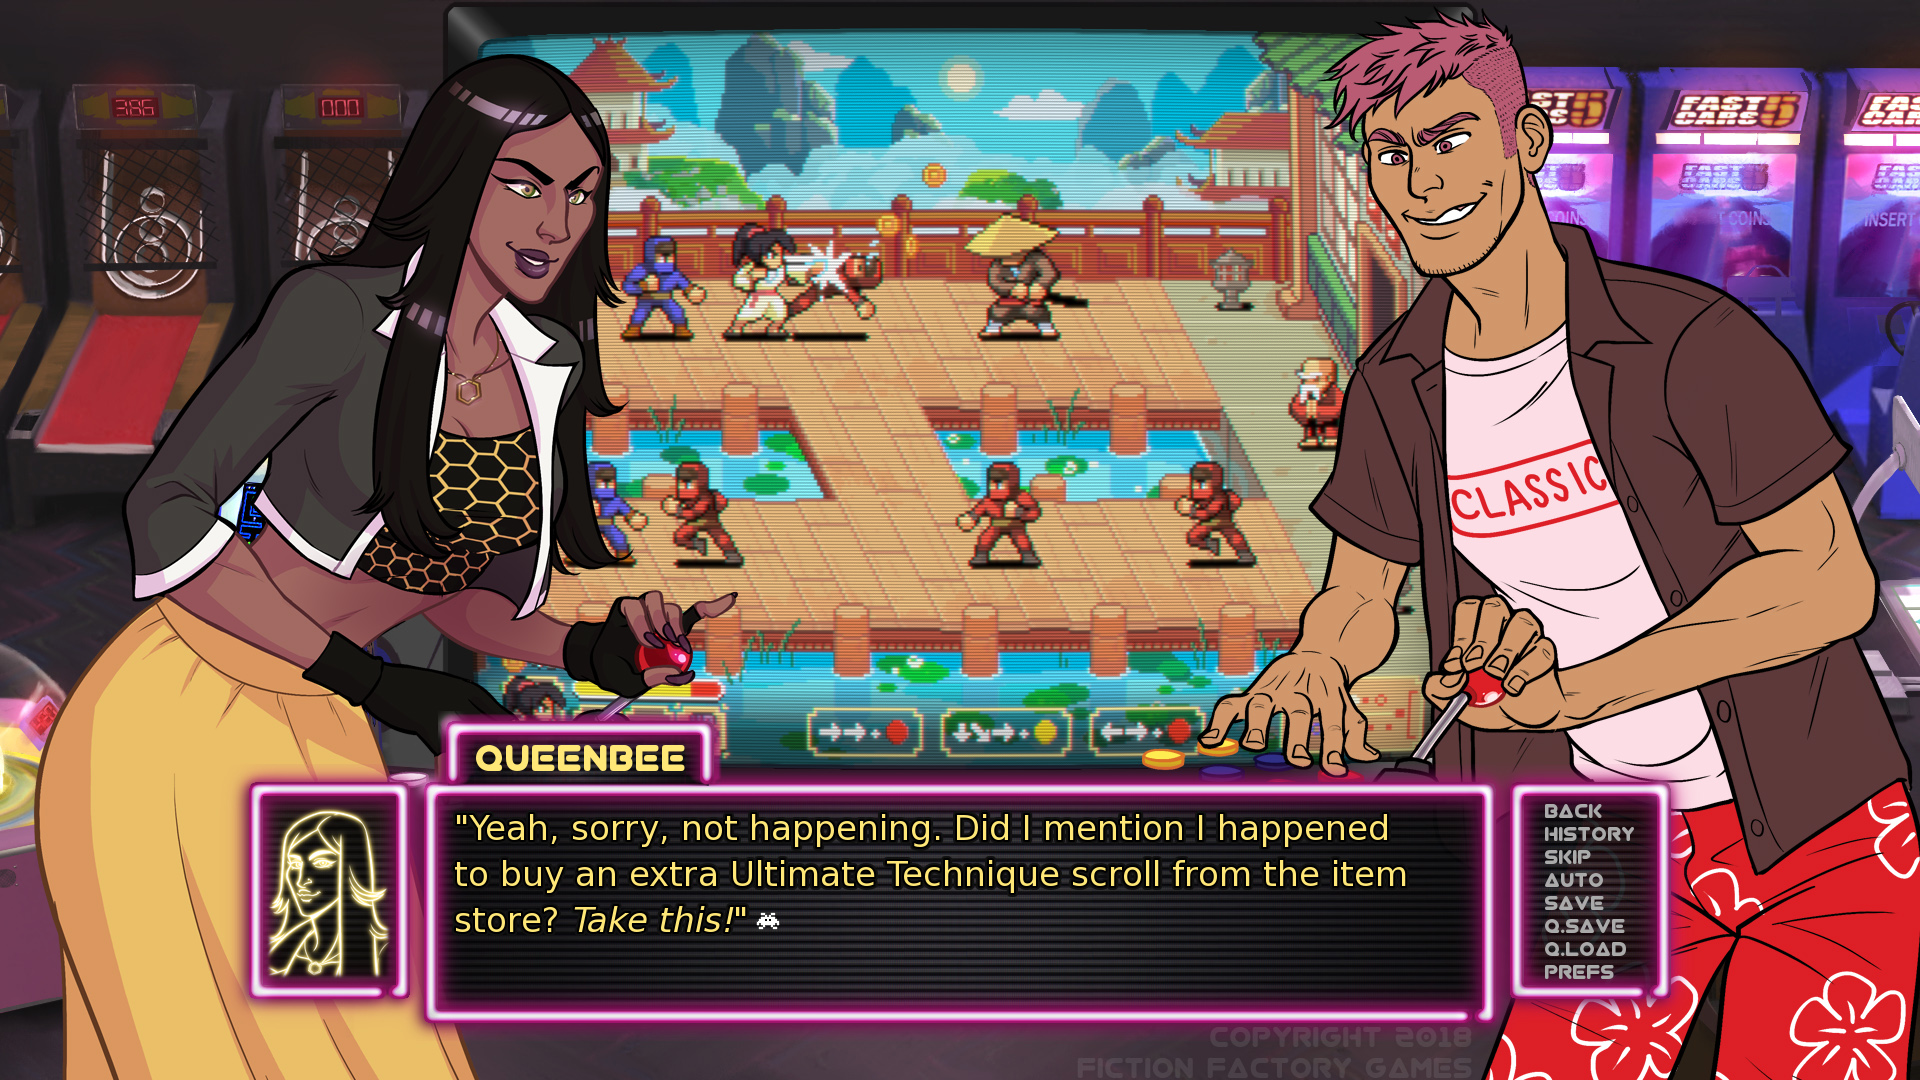 Dois personagens, incluindo QueenBee, jogam um jogo de arcade que apresenta luta.